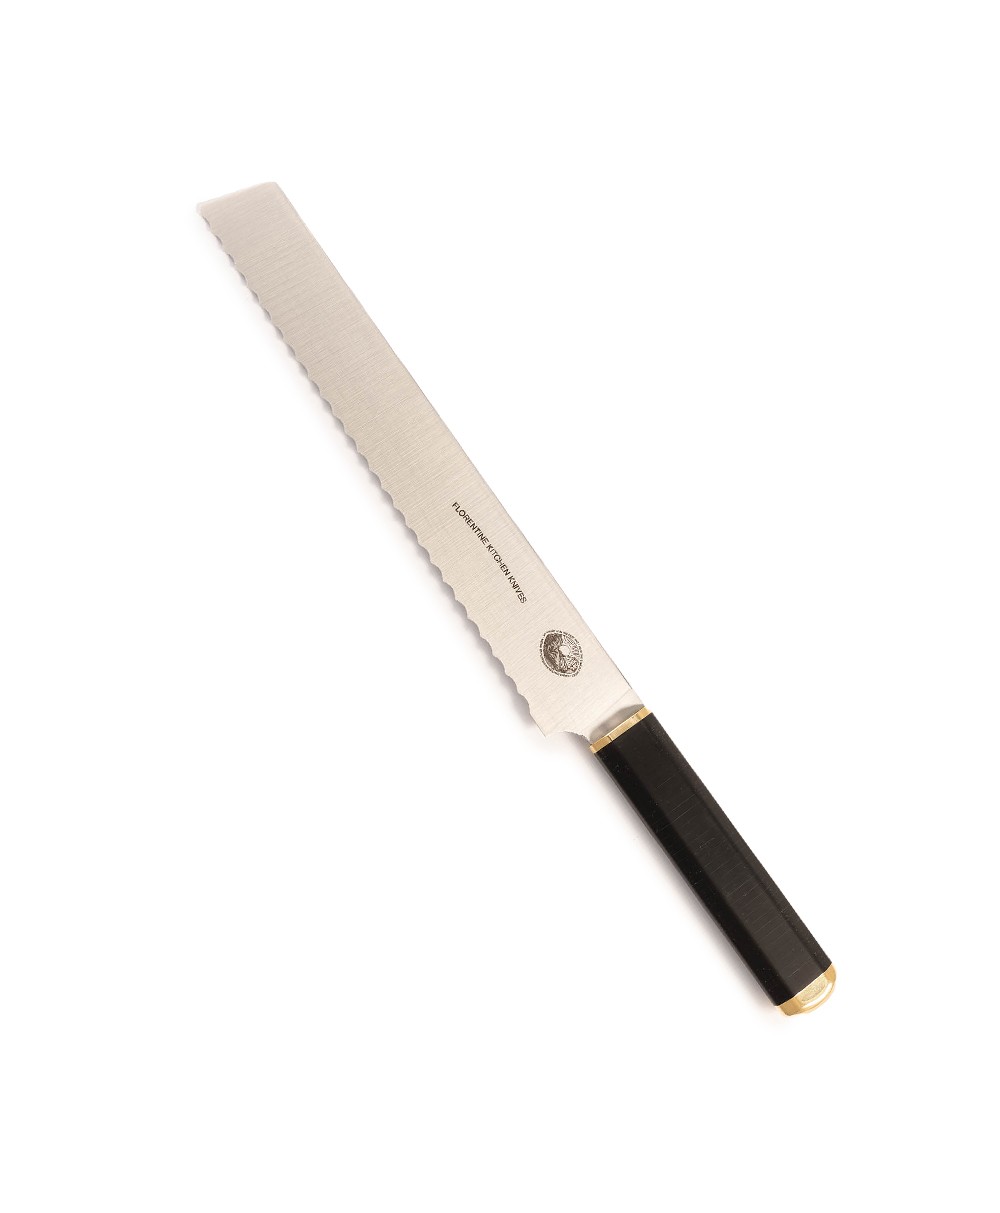 Produktbild des Kedma Pankiri Brotmesser in black von Florentine Kitchen Knives im RAUM concept store 